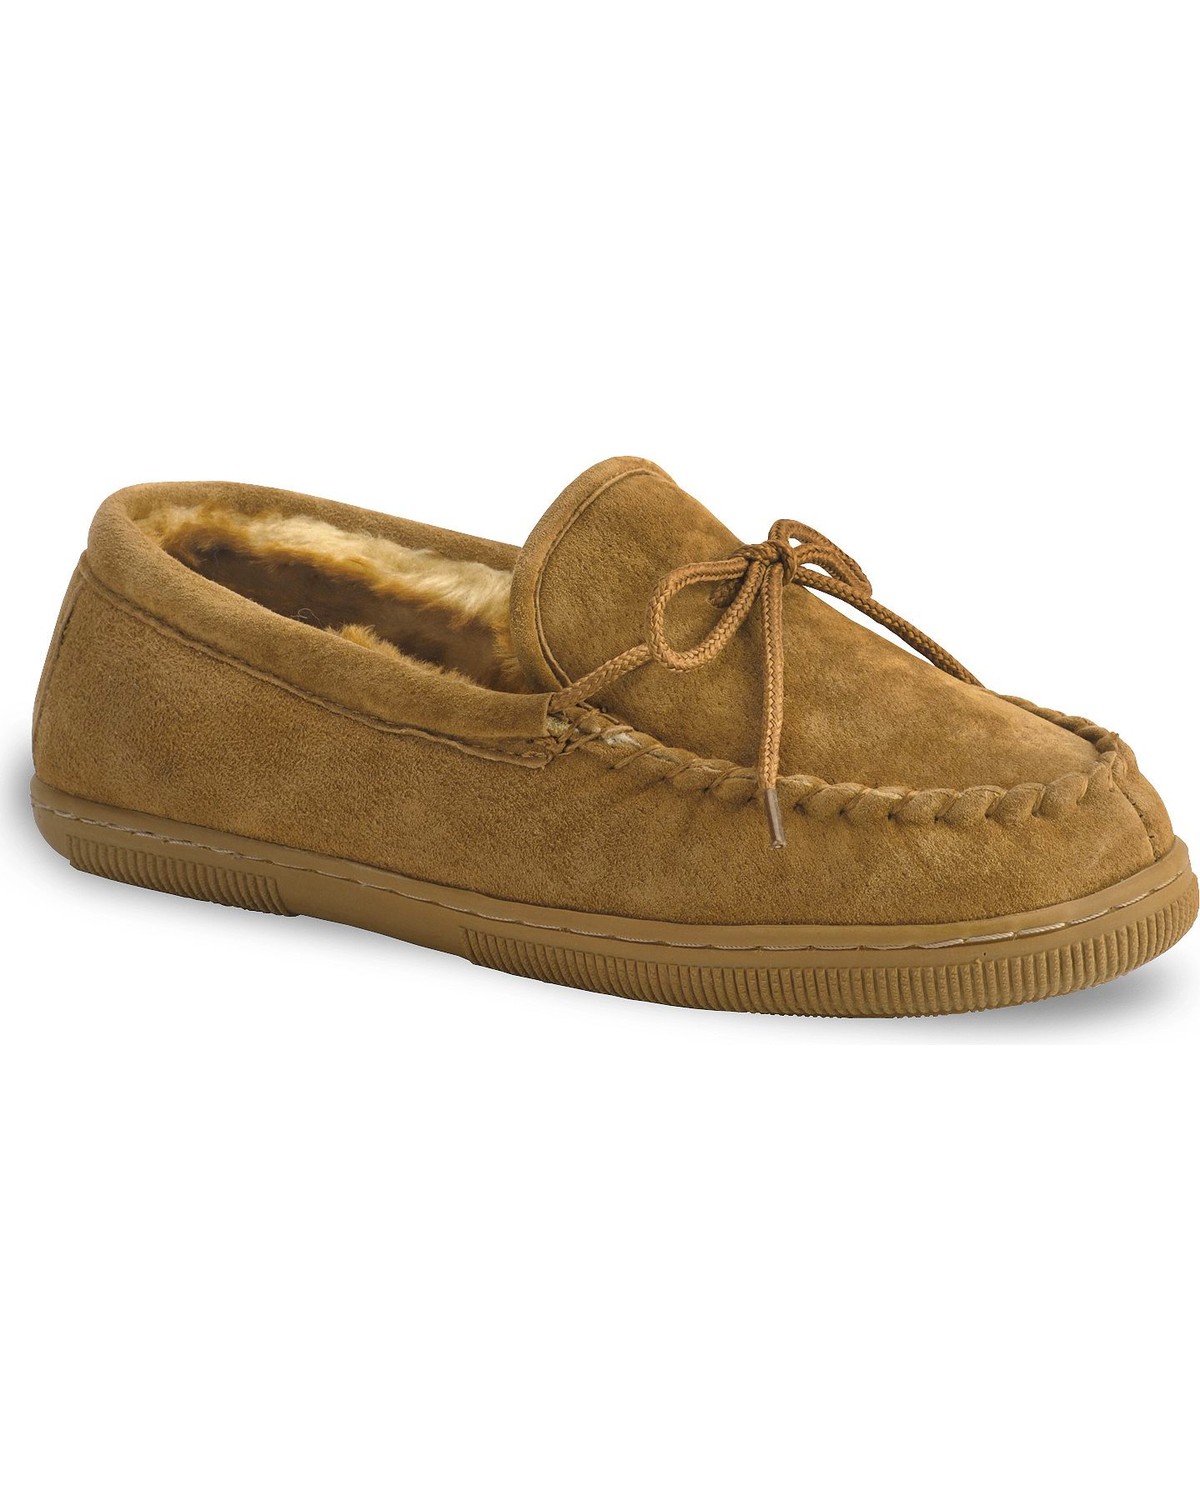 Lamo Footwear Men's Leather Moccasin Slippers - Moc Toe | Boot Barn